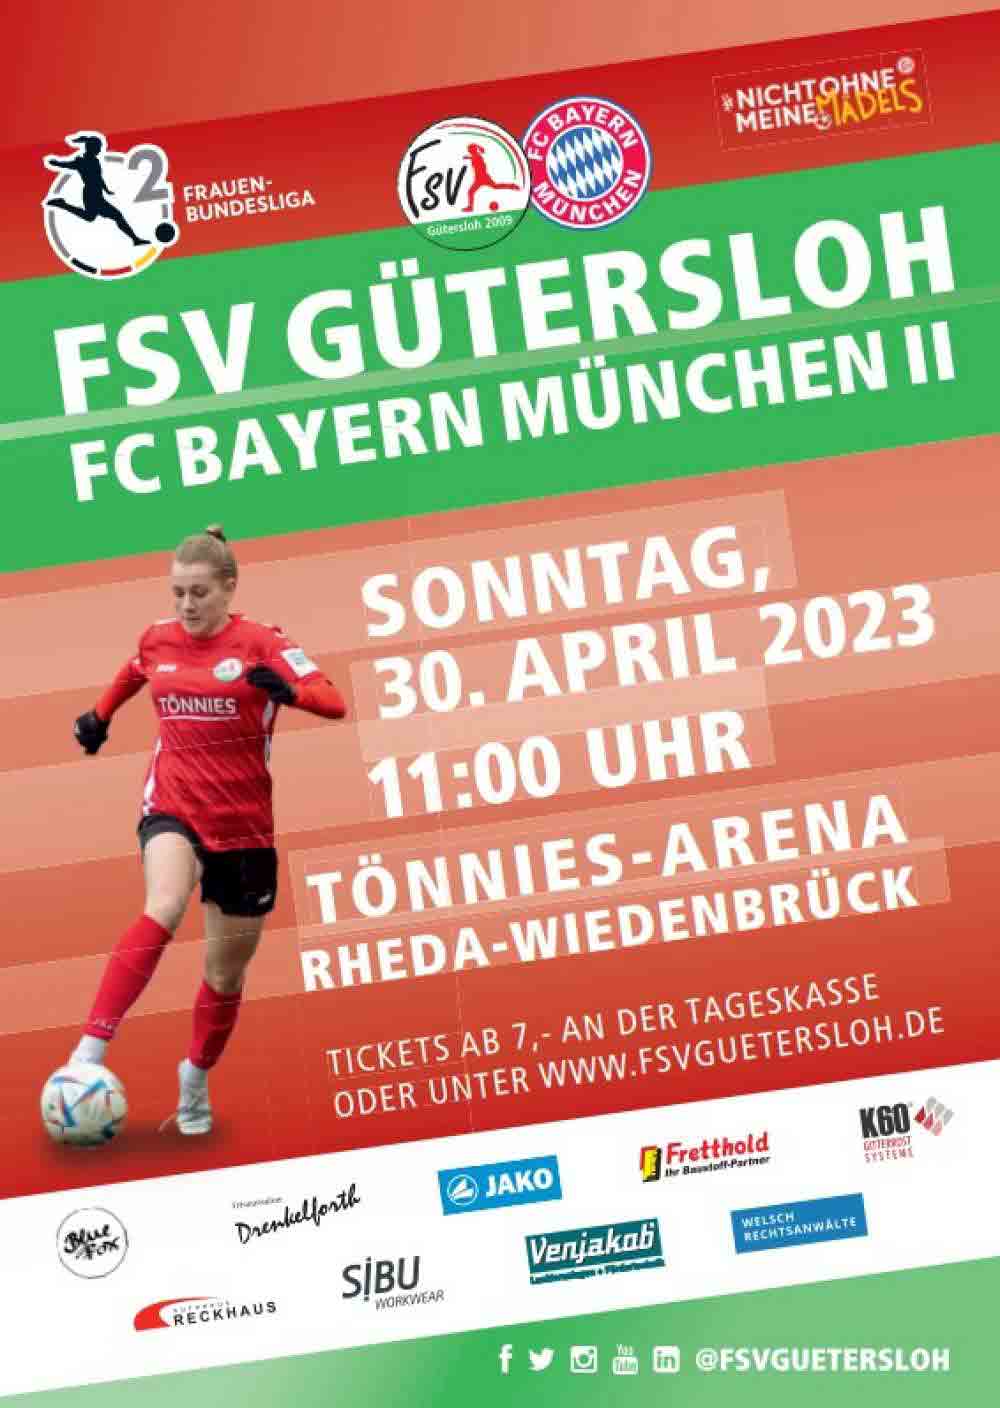 Fußball in Gütersloh, 2. Frauen Bundesliga, 22. Spieltag, FSV Gütersloh gegen FC Bayern München II